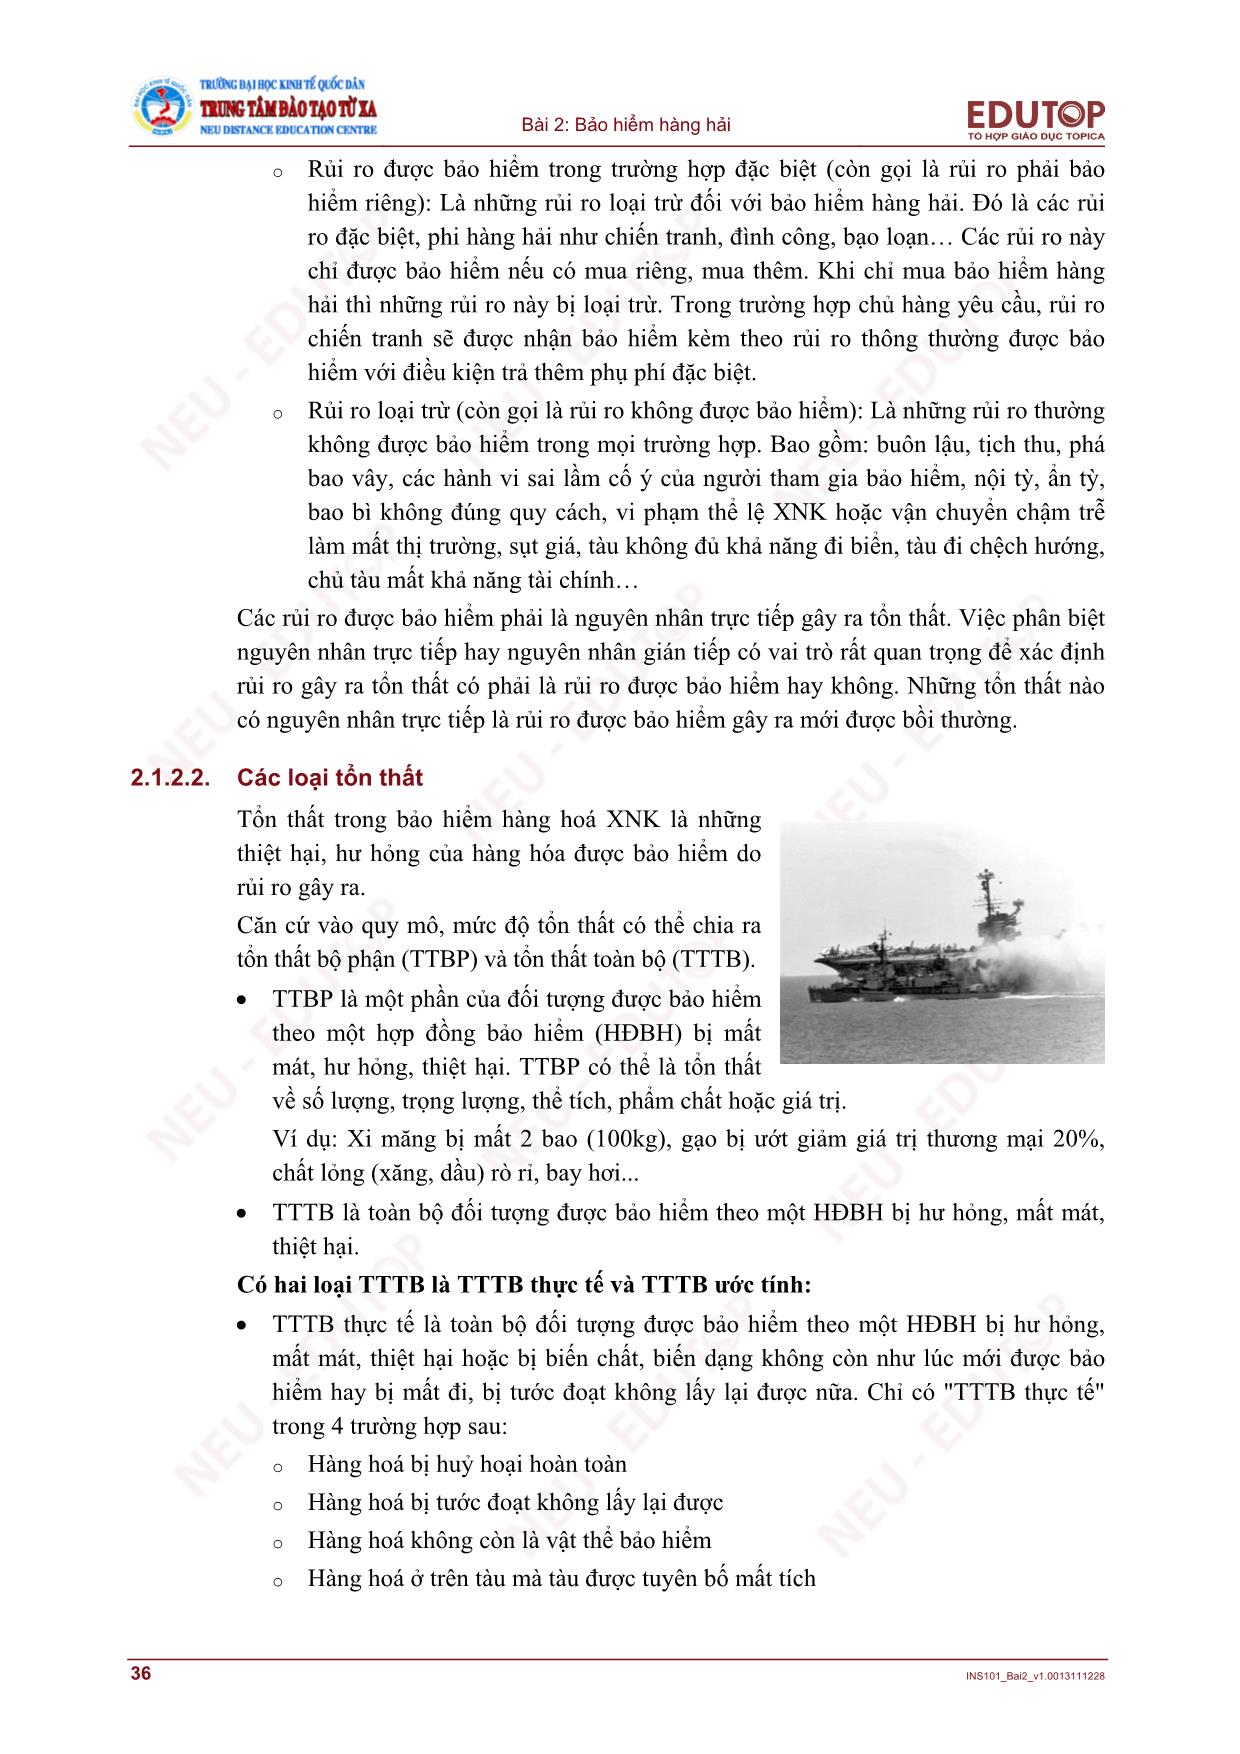 Bài giảng Bảo hiểm thương mại - Bài 2, Phần 2: Bảo hiểm hàng hải - Nguyễn Thị Lệ Huyền trang 4